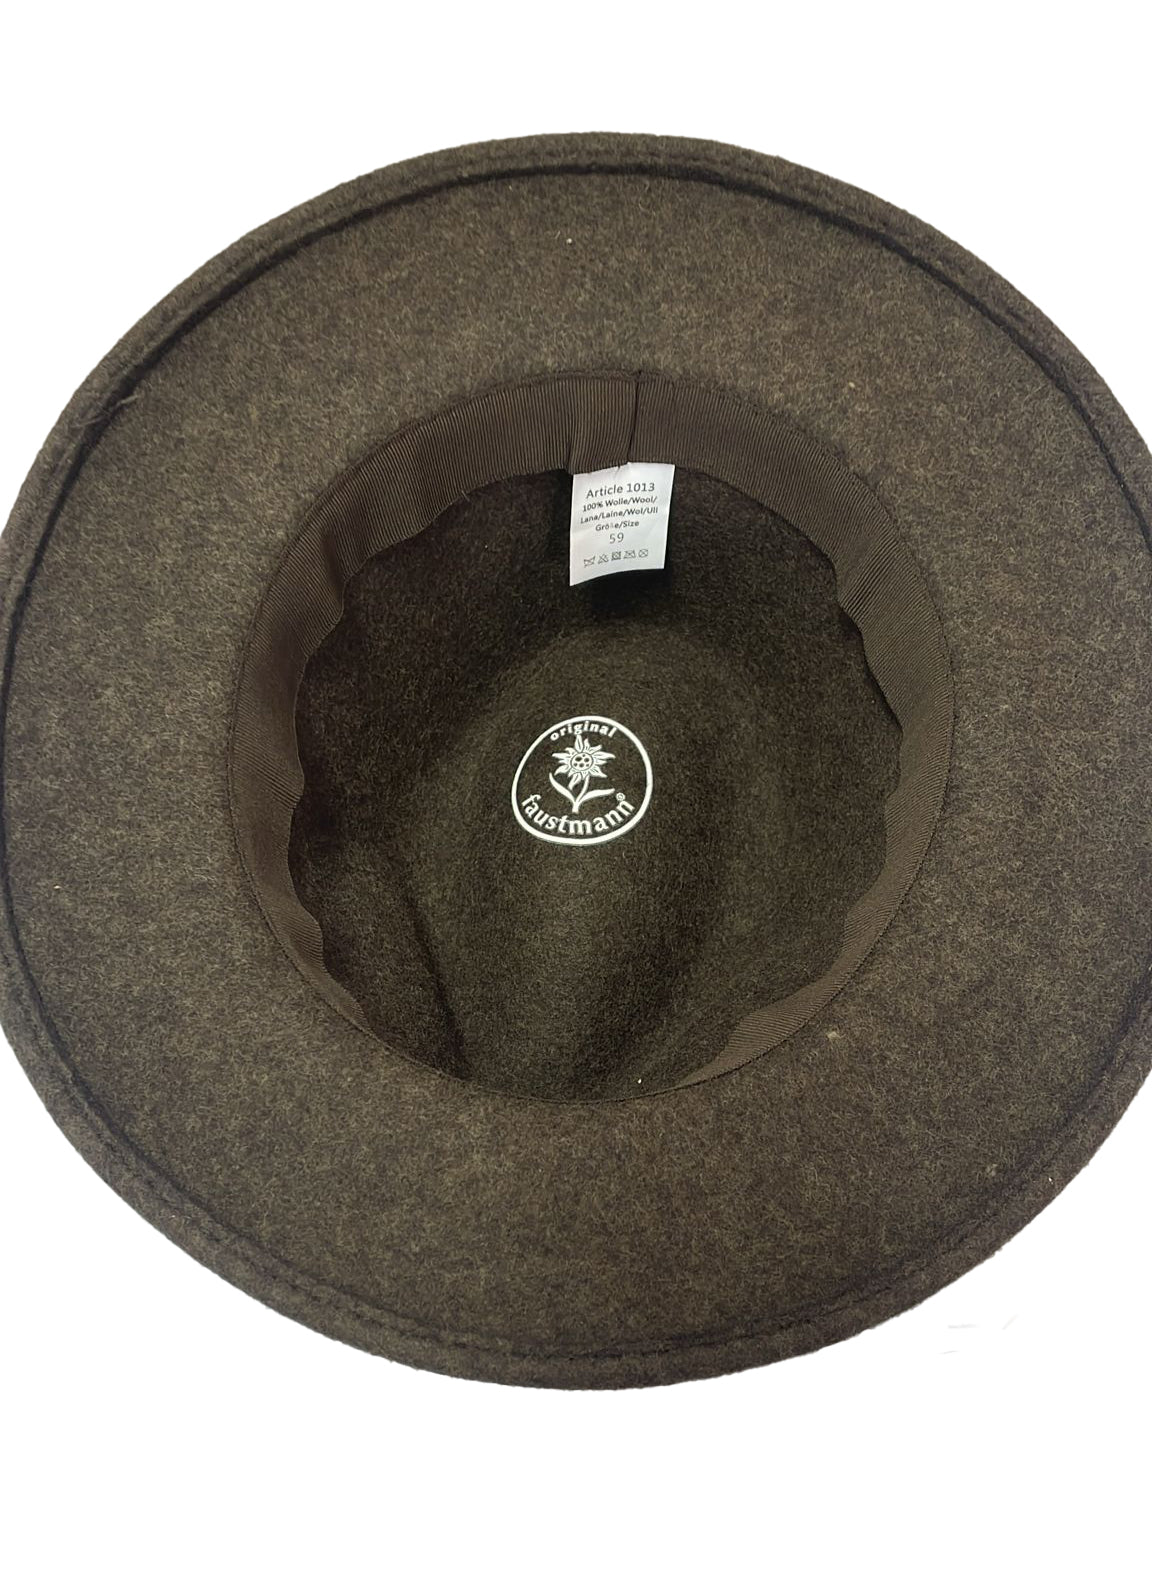 knautschbarer Faustmann Wollfilzhut mit schwarzem Hutband- braunmeliert Größe L